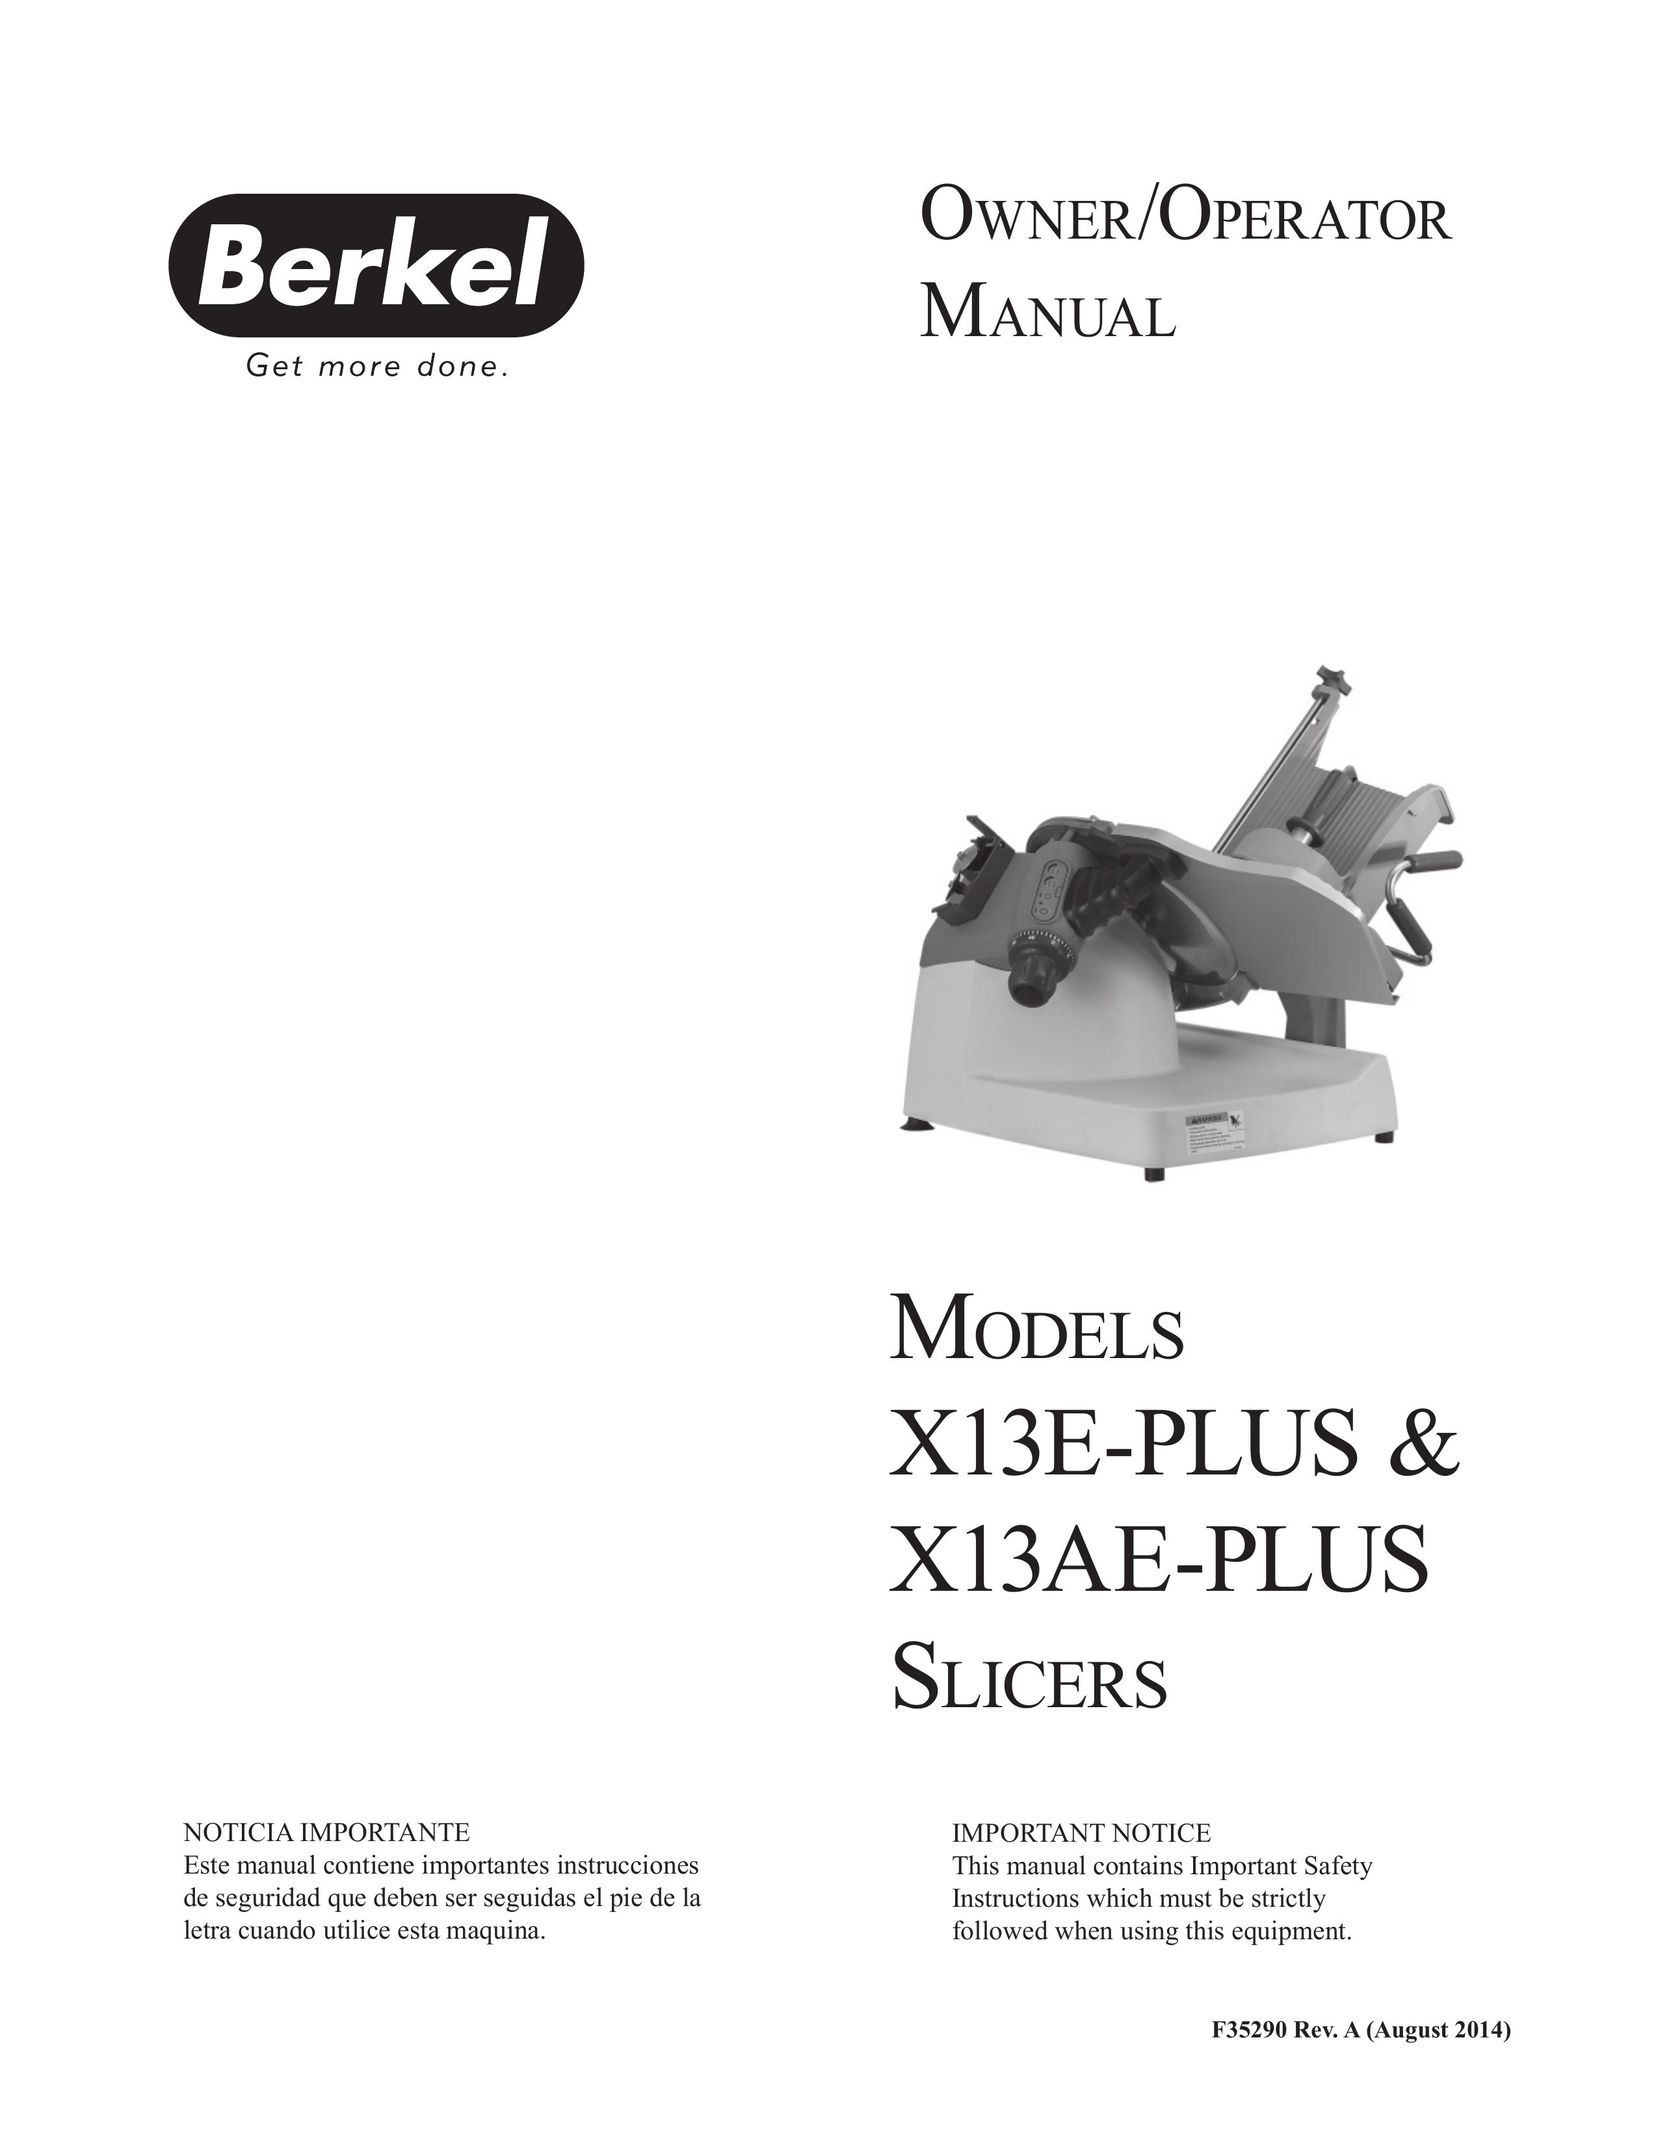 Berkel X13AE-PLUS Food Processor User Manual